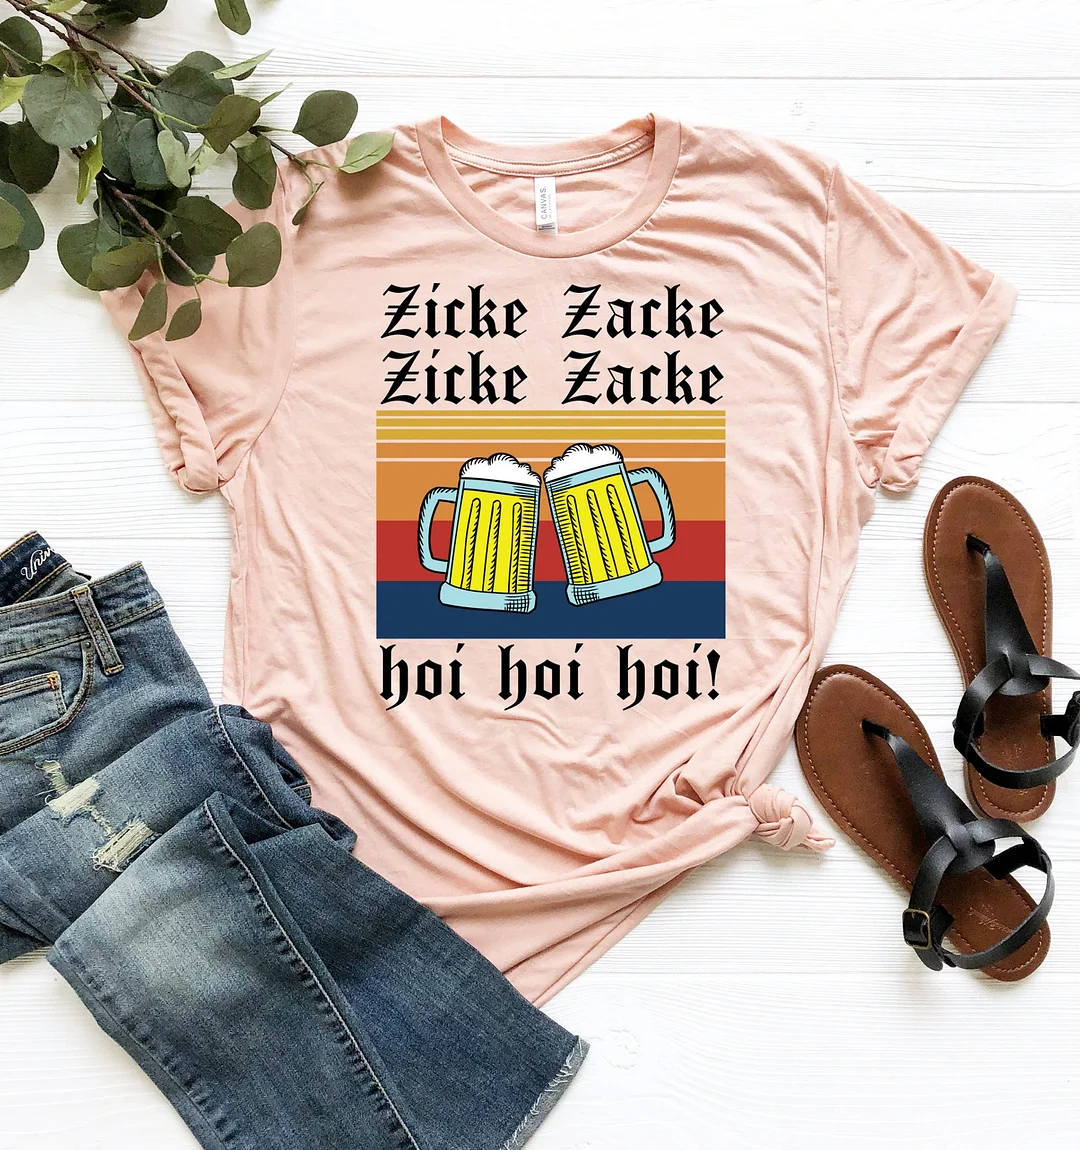 Zicke Zacke Hoi Shirt German Beer Oktoberfest Cheers Lover Gift Drinking Party Top Tees